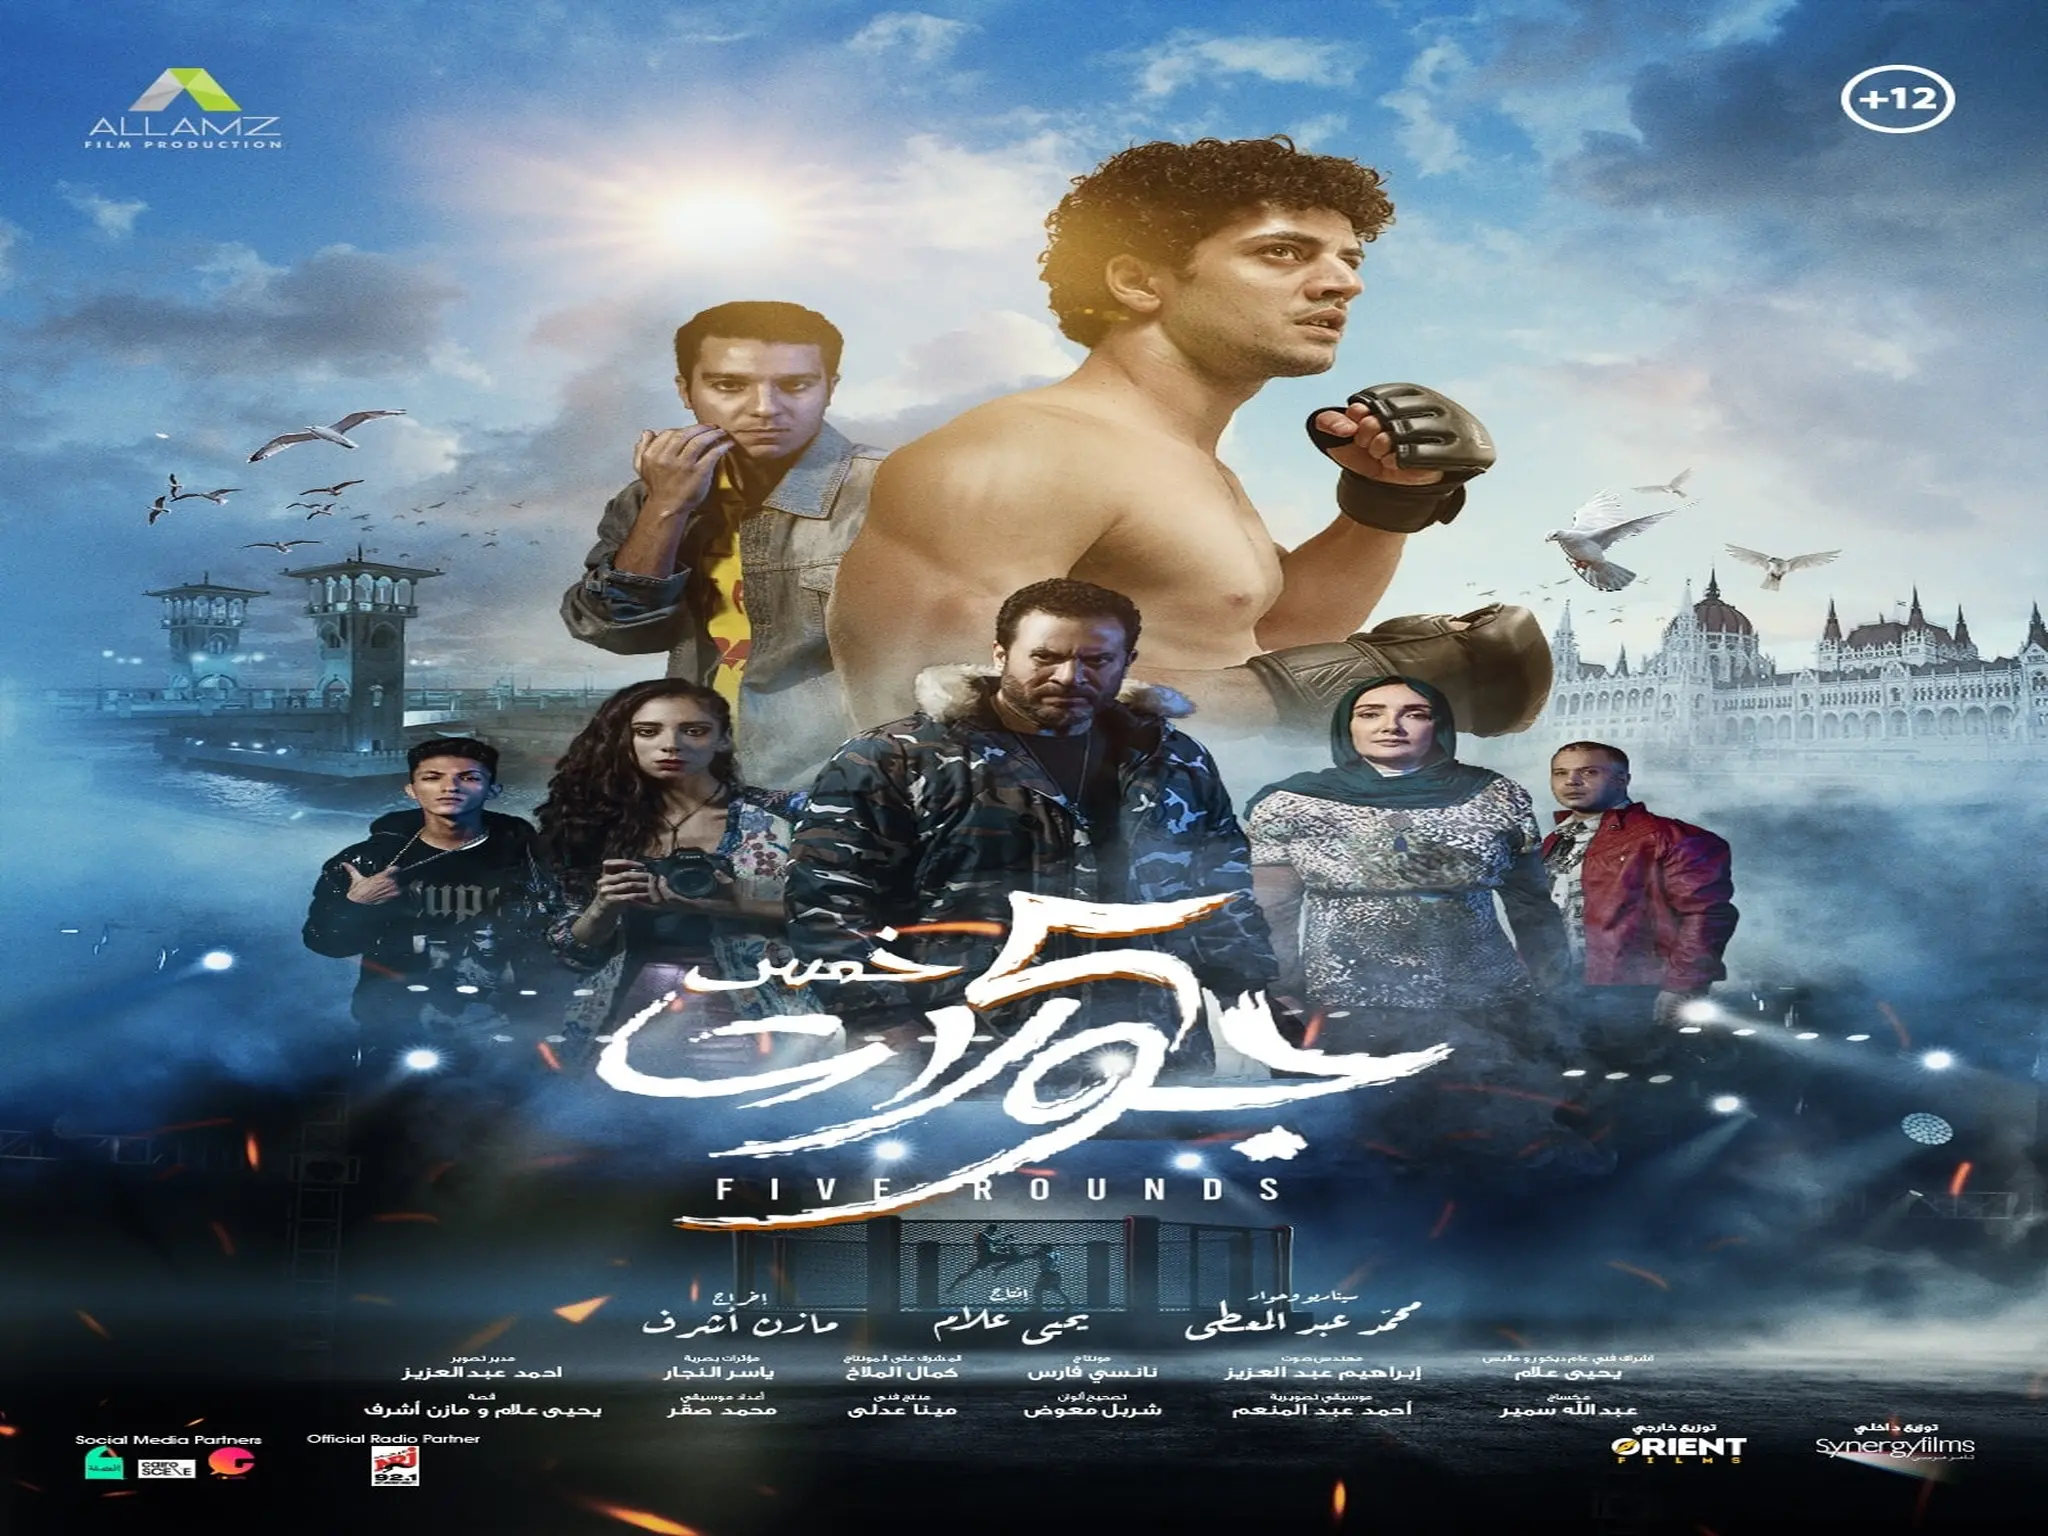 الأعلان الرسمي لفيلم عيد الفطر «خمس جولات» بطولة أدم شرقاوي ونور النبوي